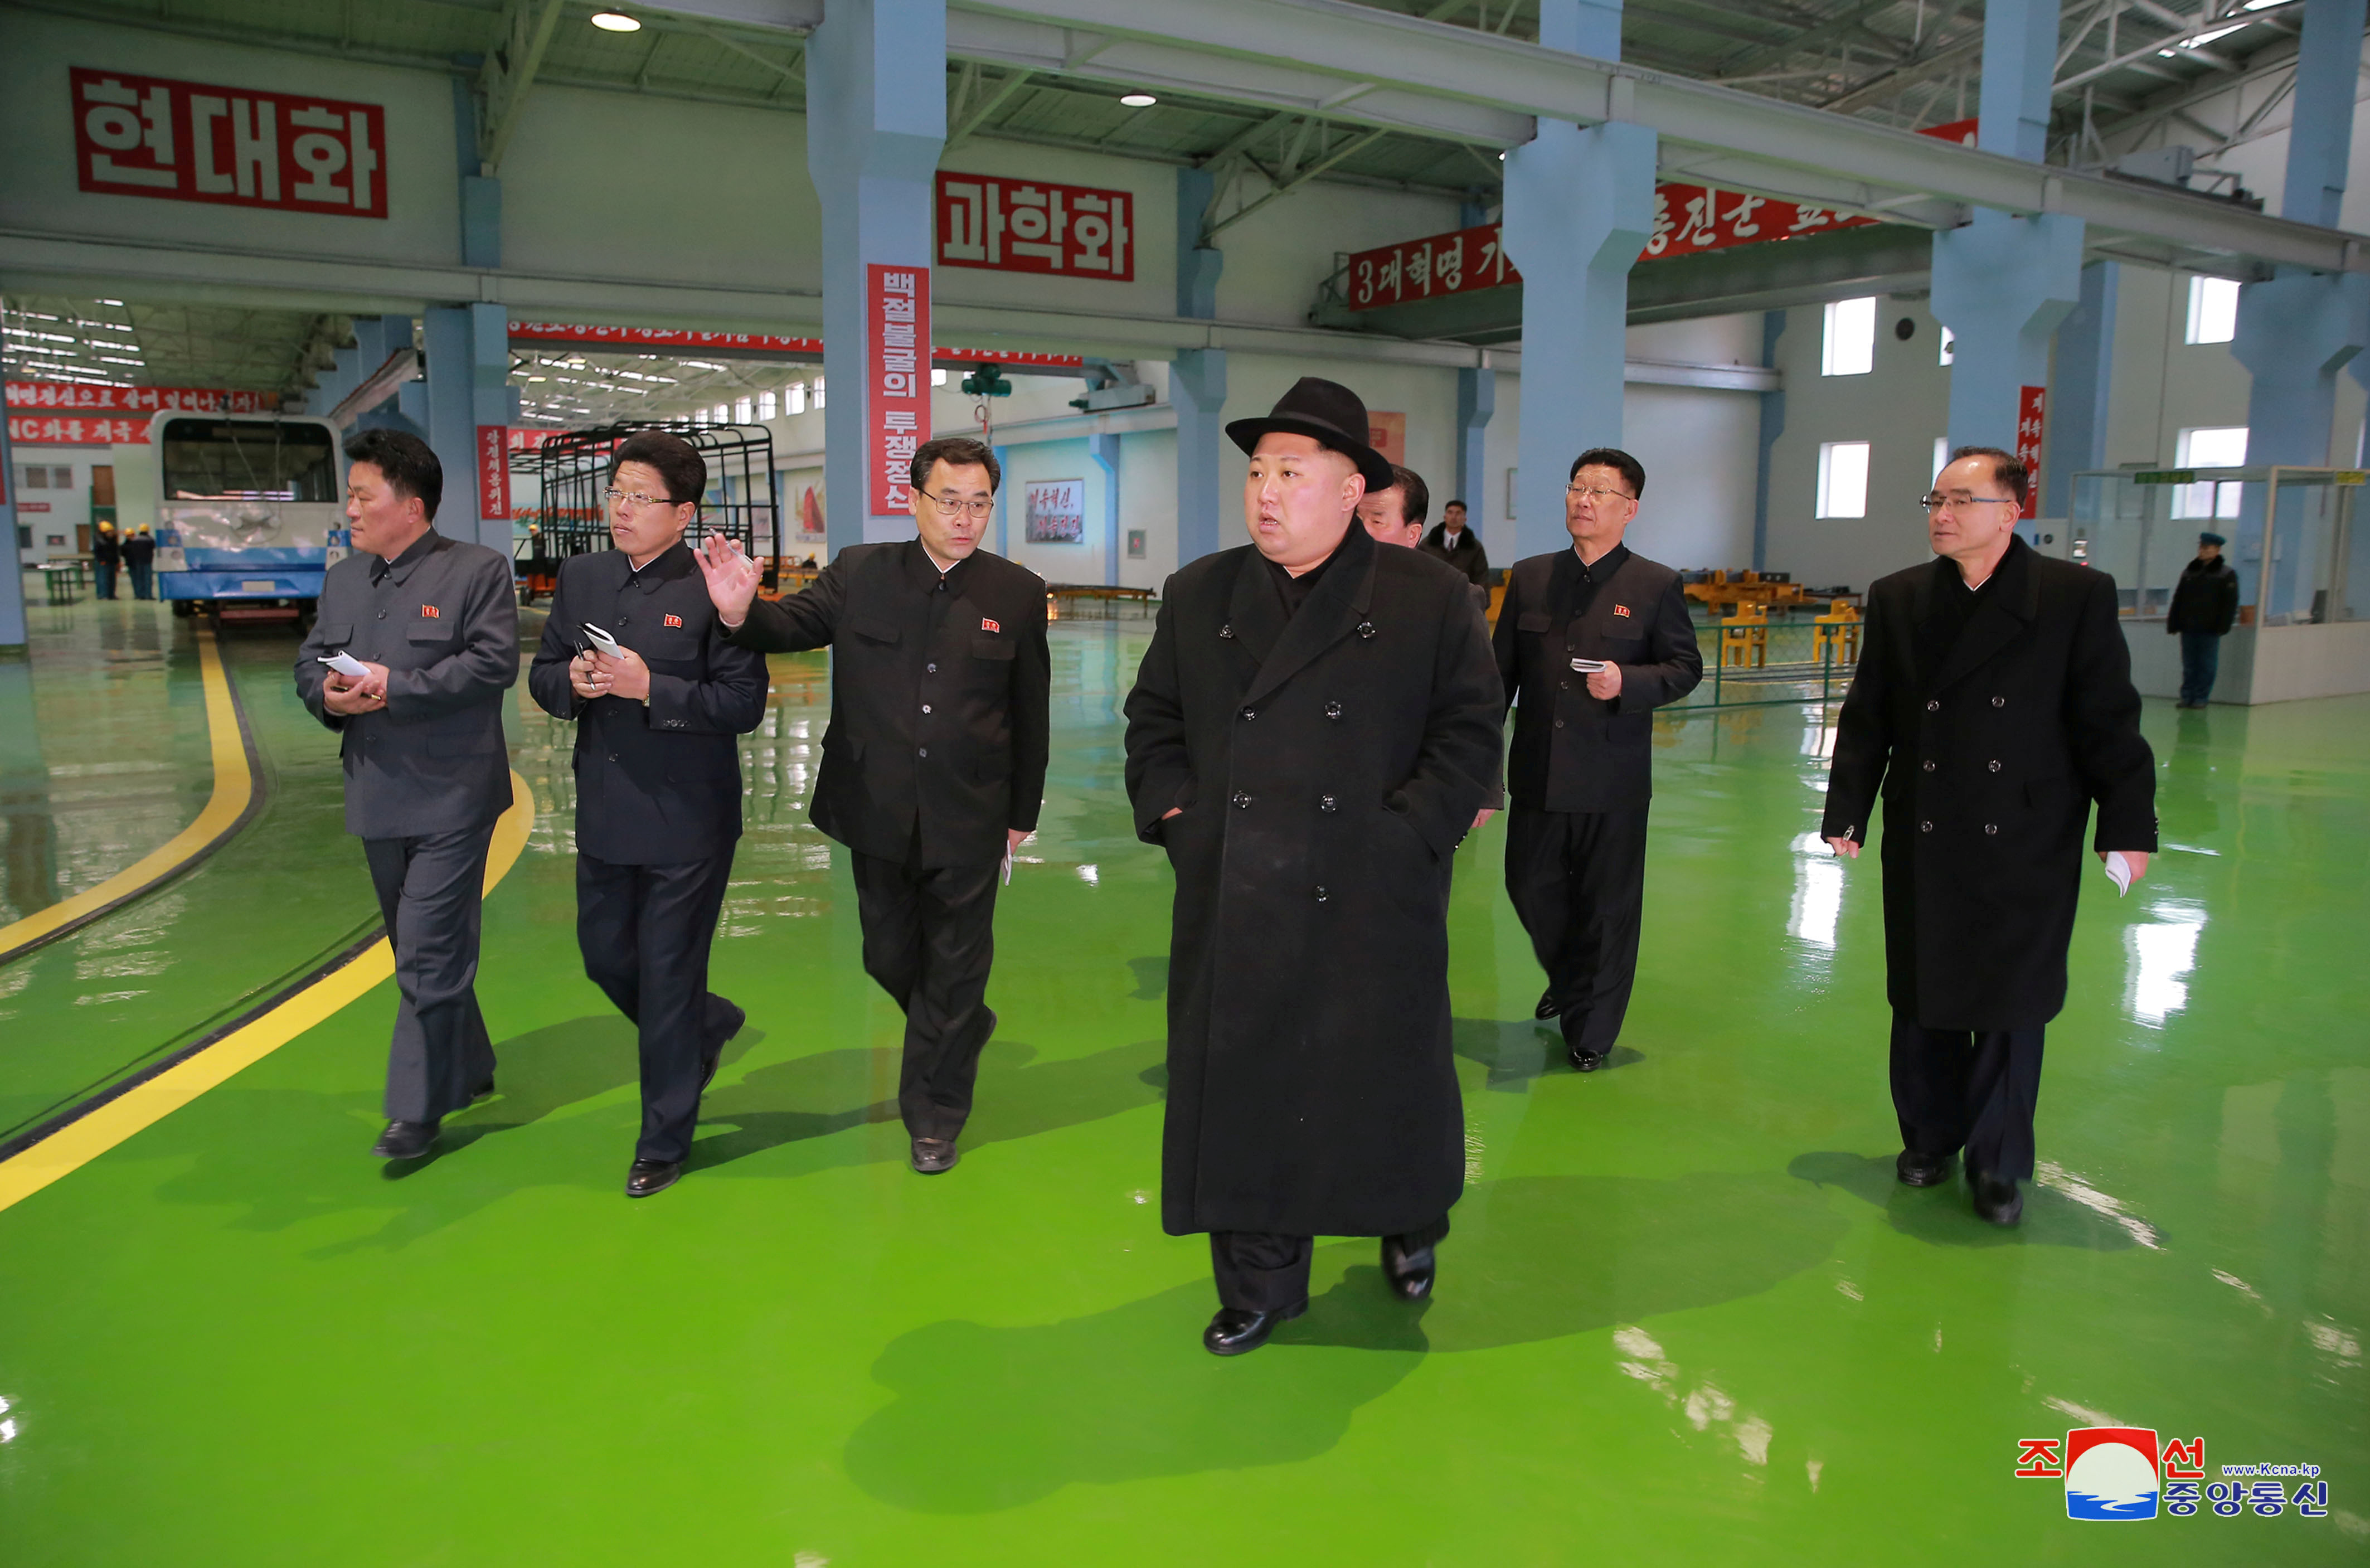 زعيم كوريا الشمالية داخل مصنع الحافلات